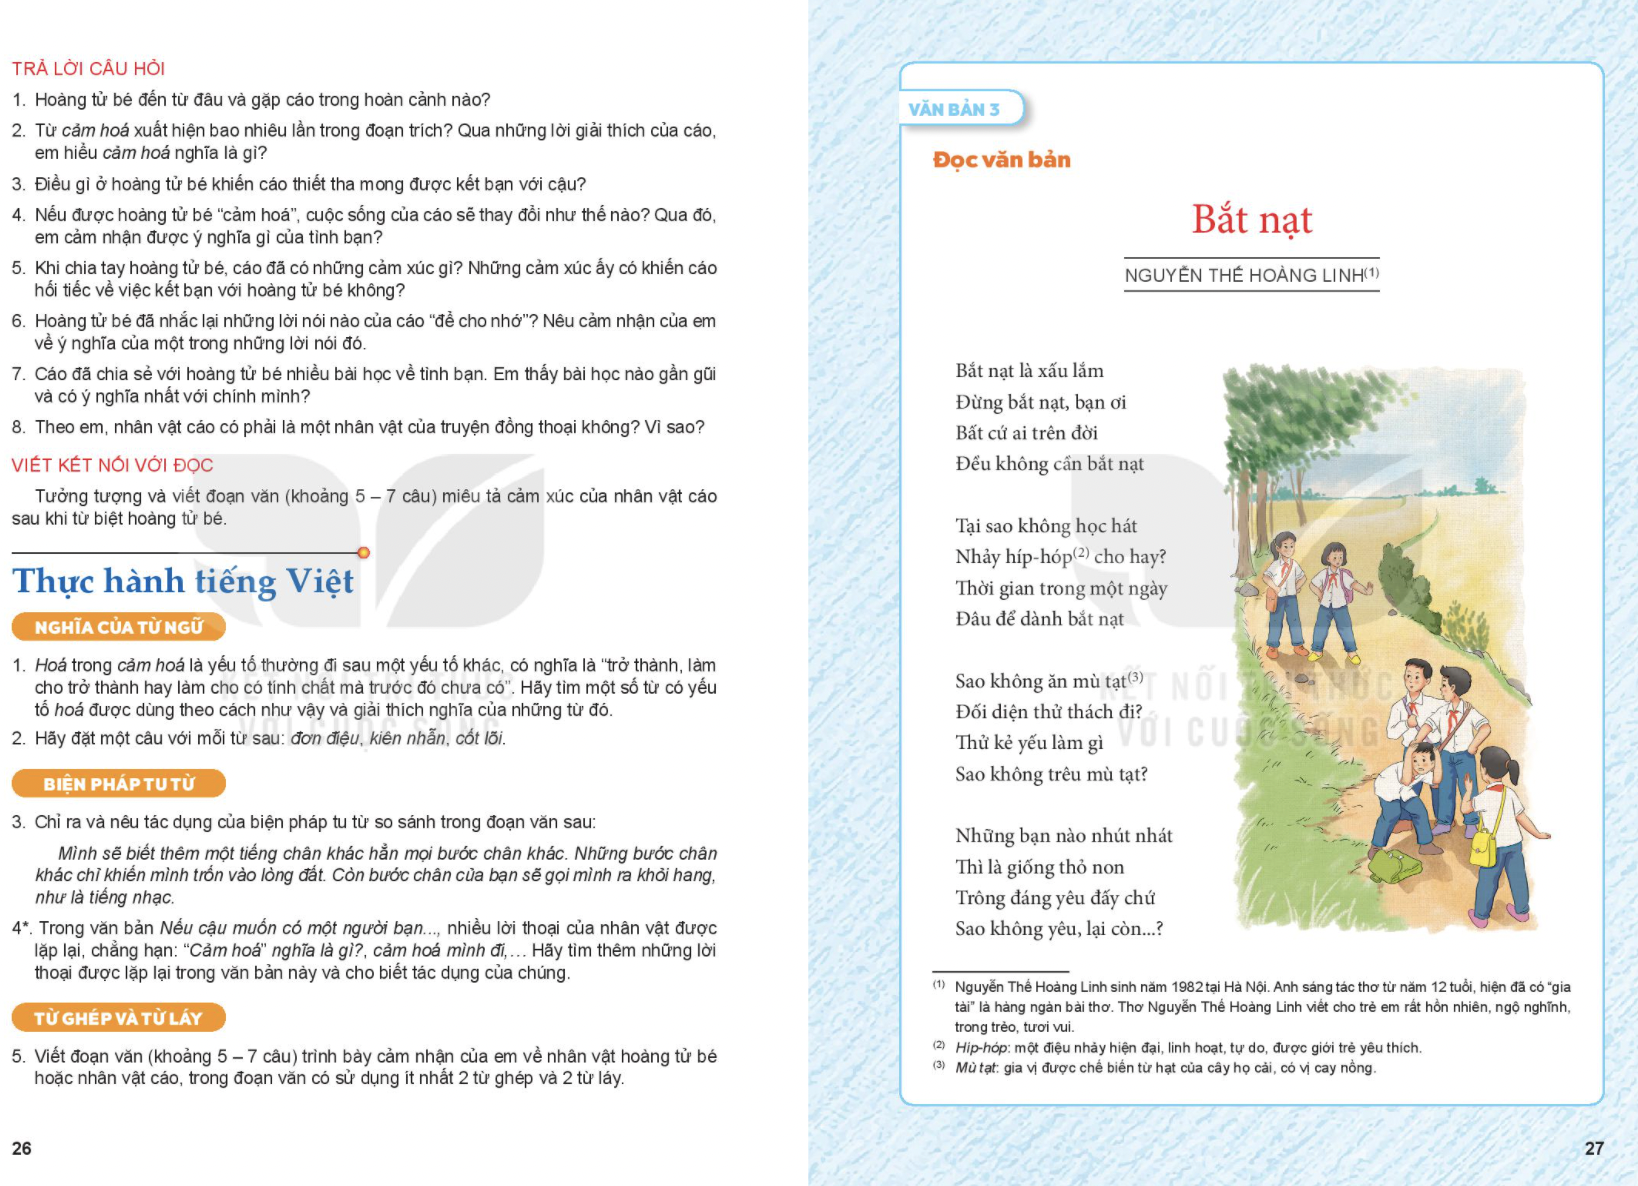 Bài thơ trong SGK Ngữ văn lớp 6 chương trình mới bị phản đối kịch liệt